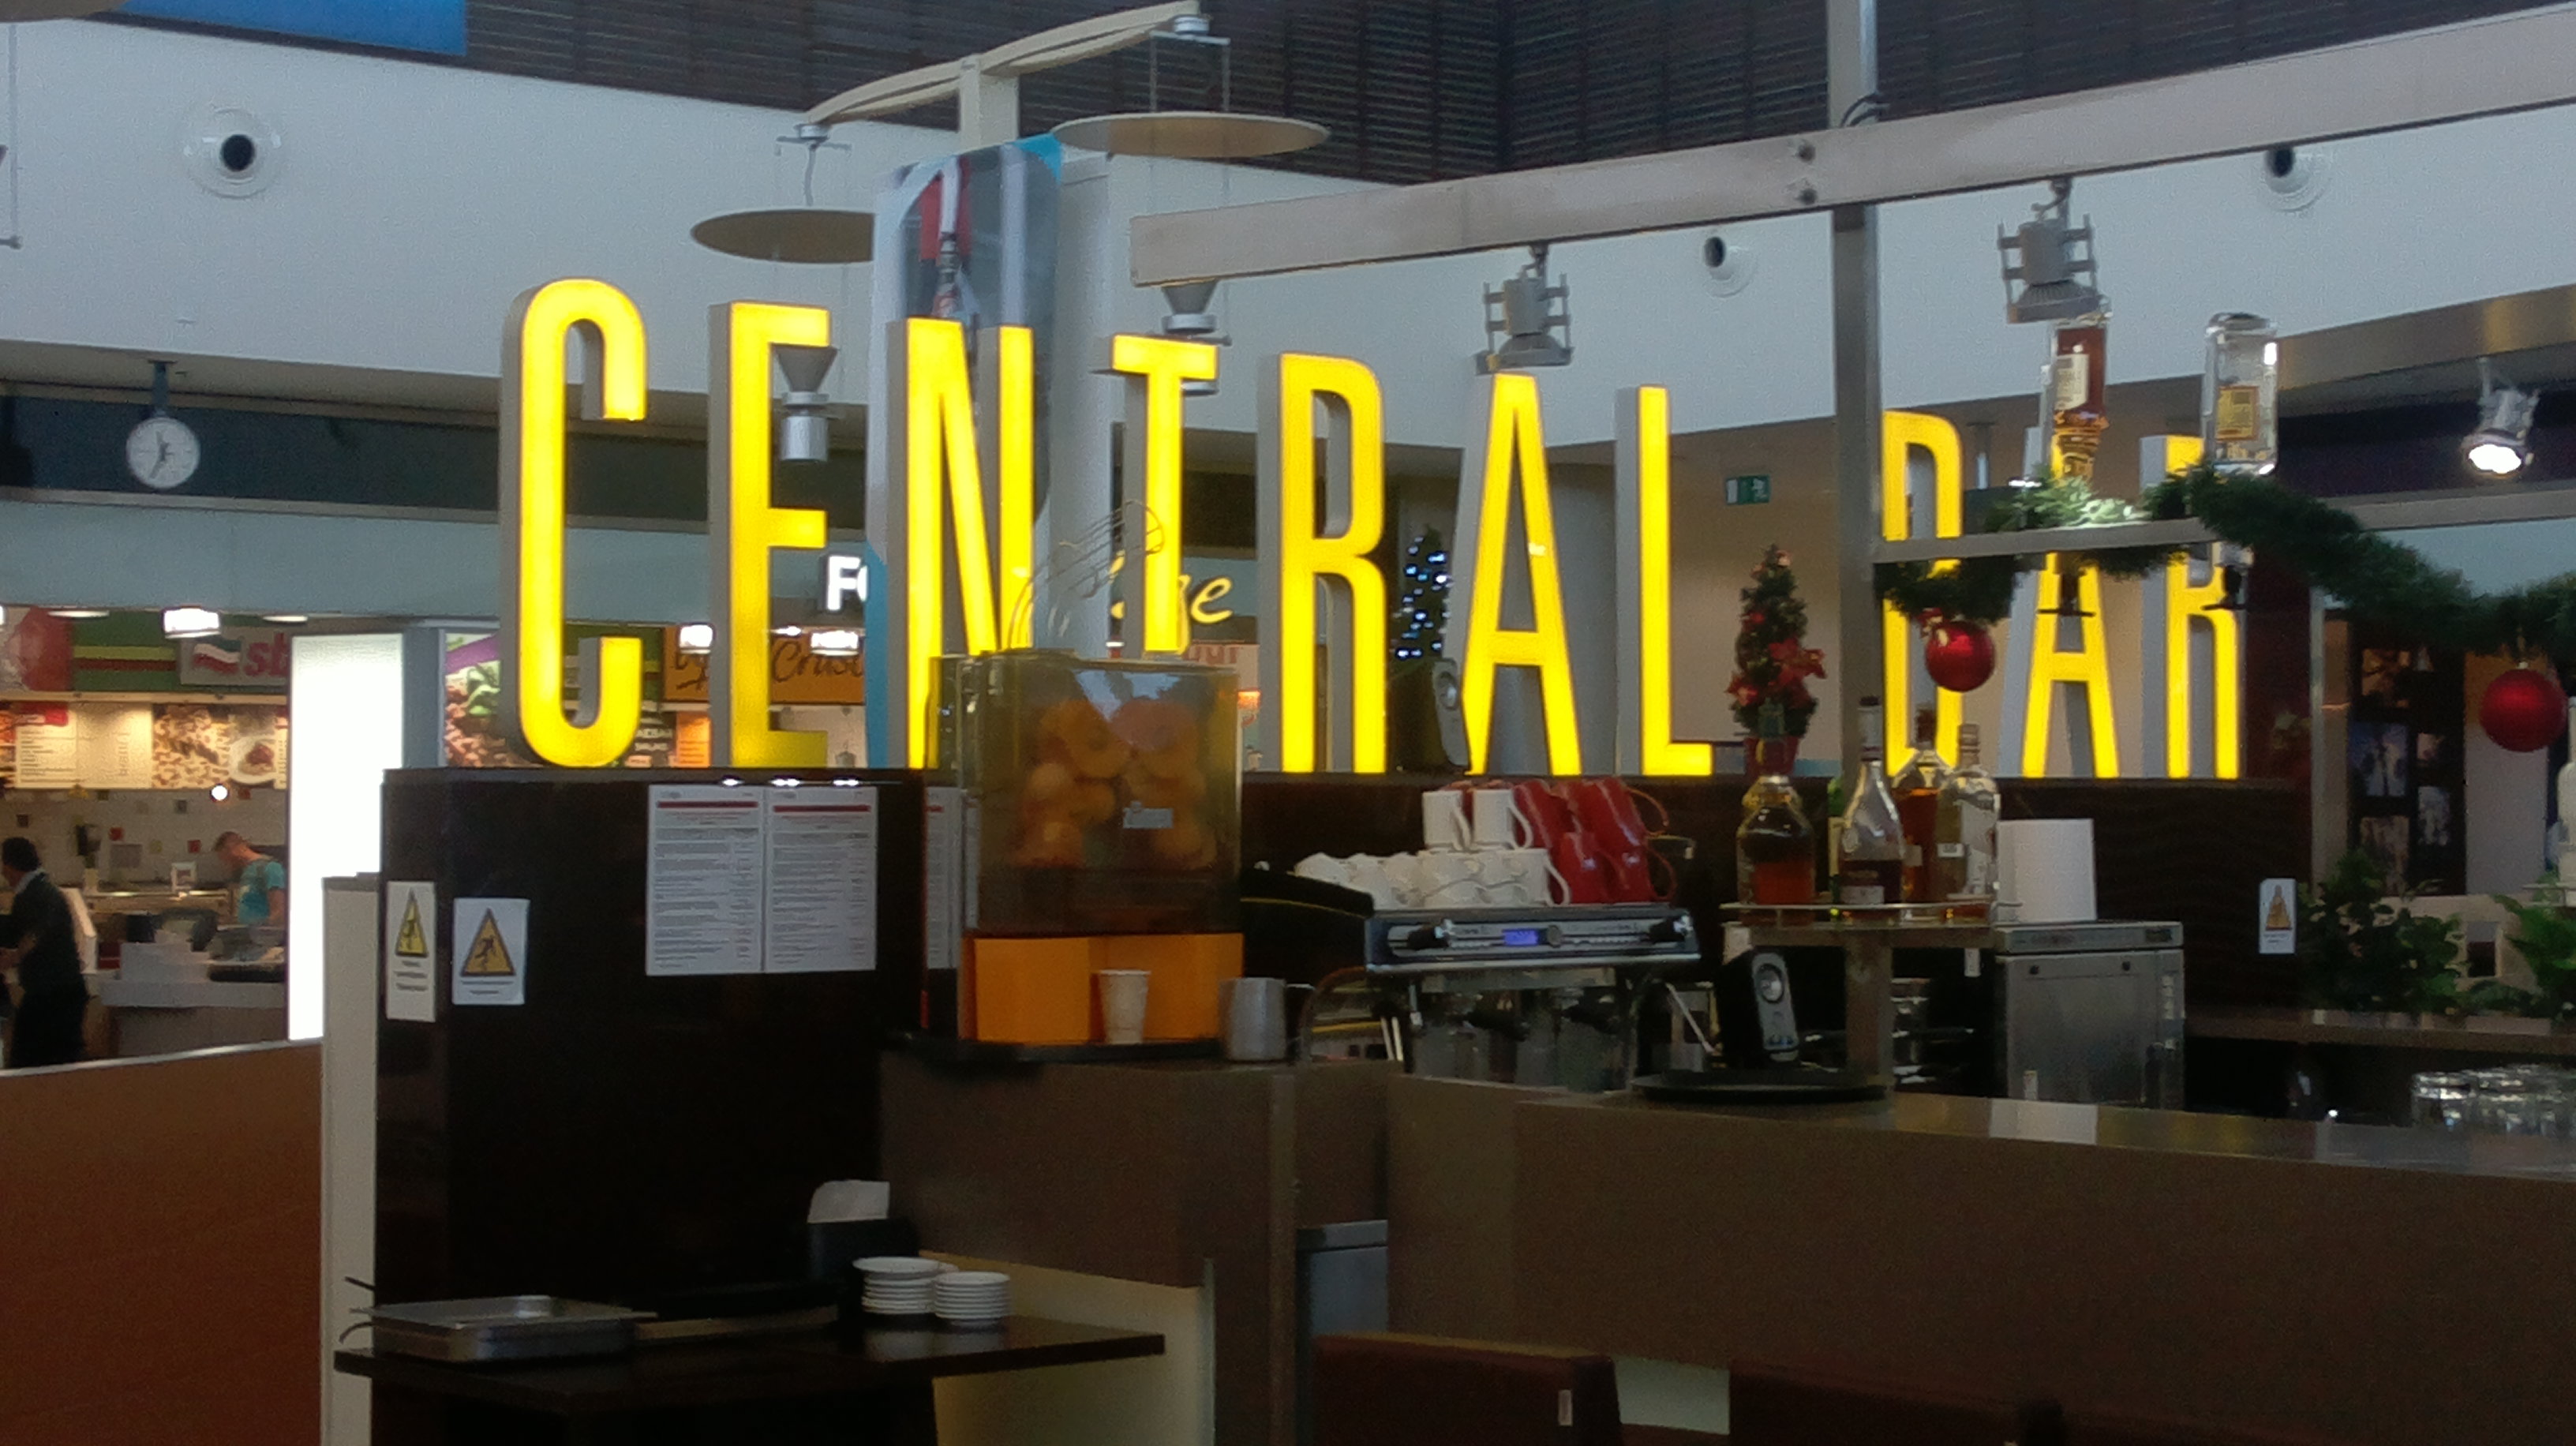 Central Bar